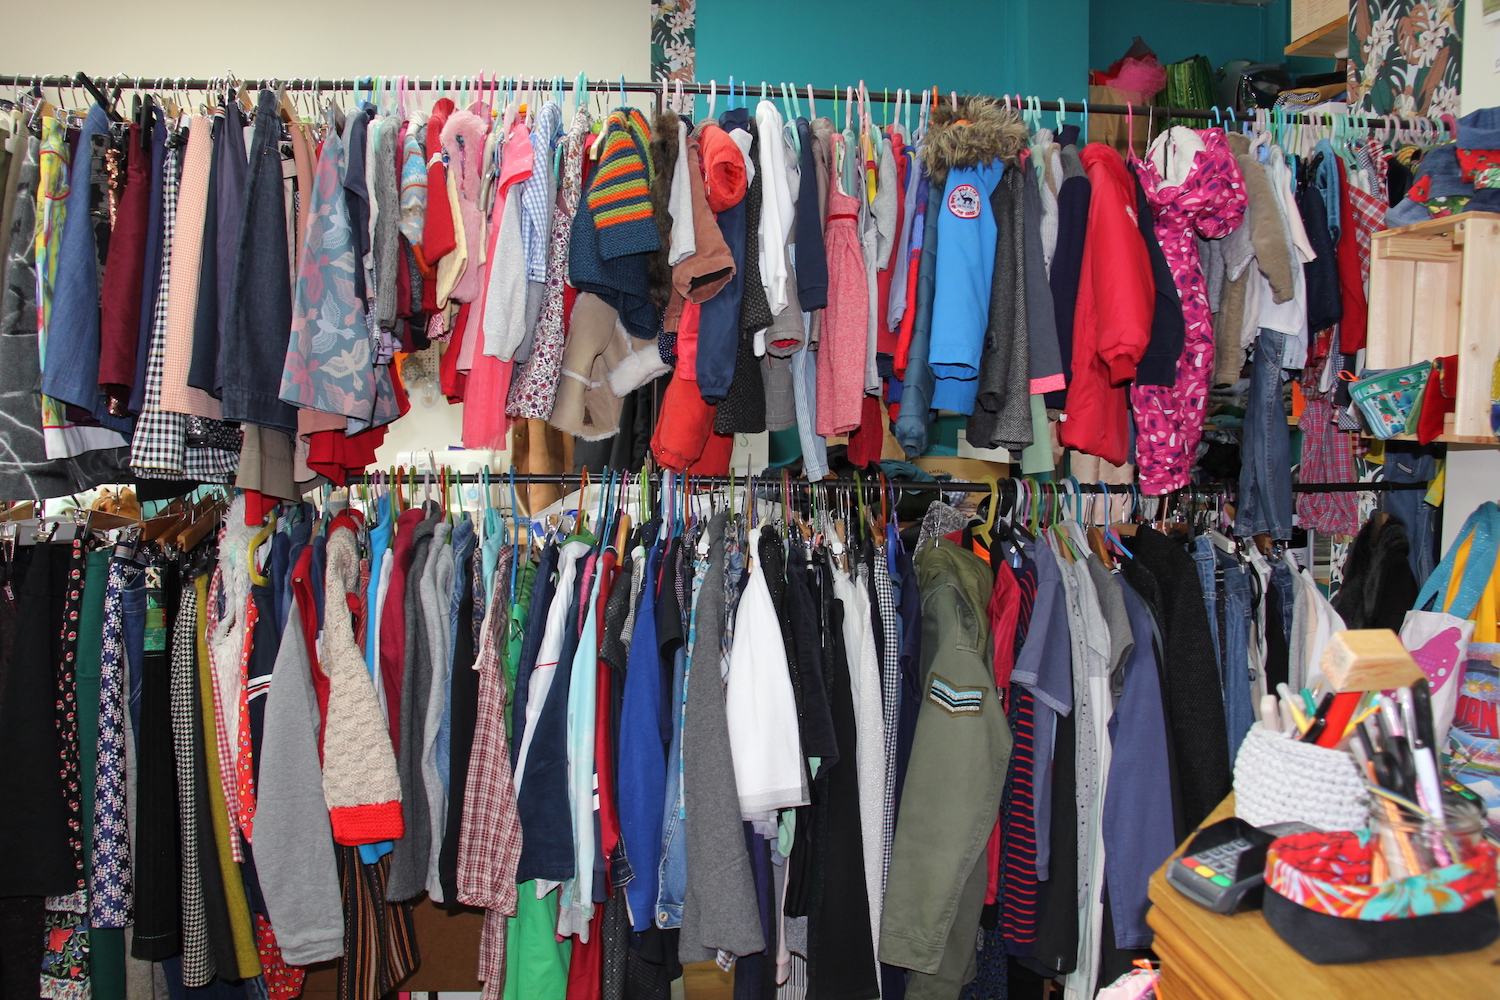 Les deux portants de vêtements pour enfants servent de séparation entre la partie vente et atelier de couture © Globe Reporters